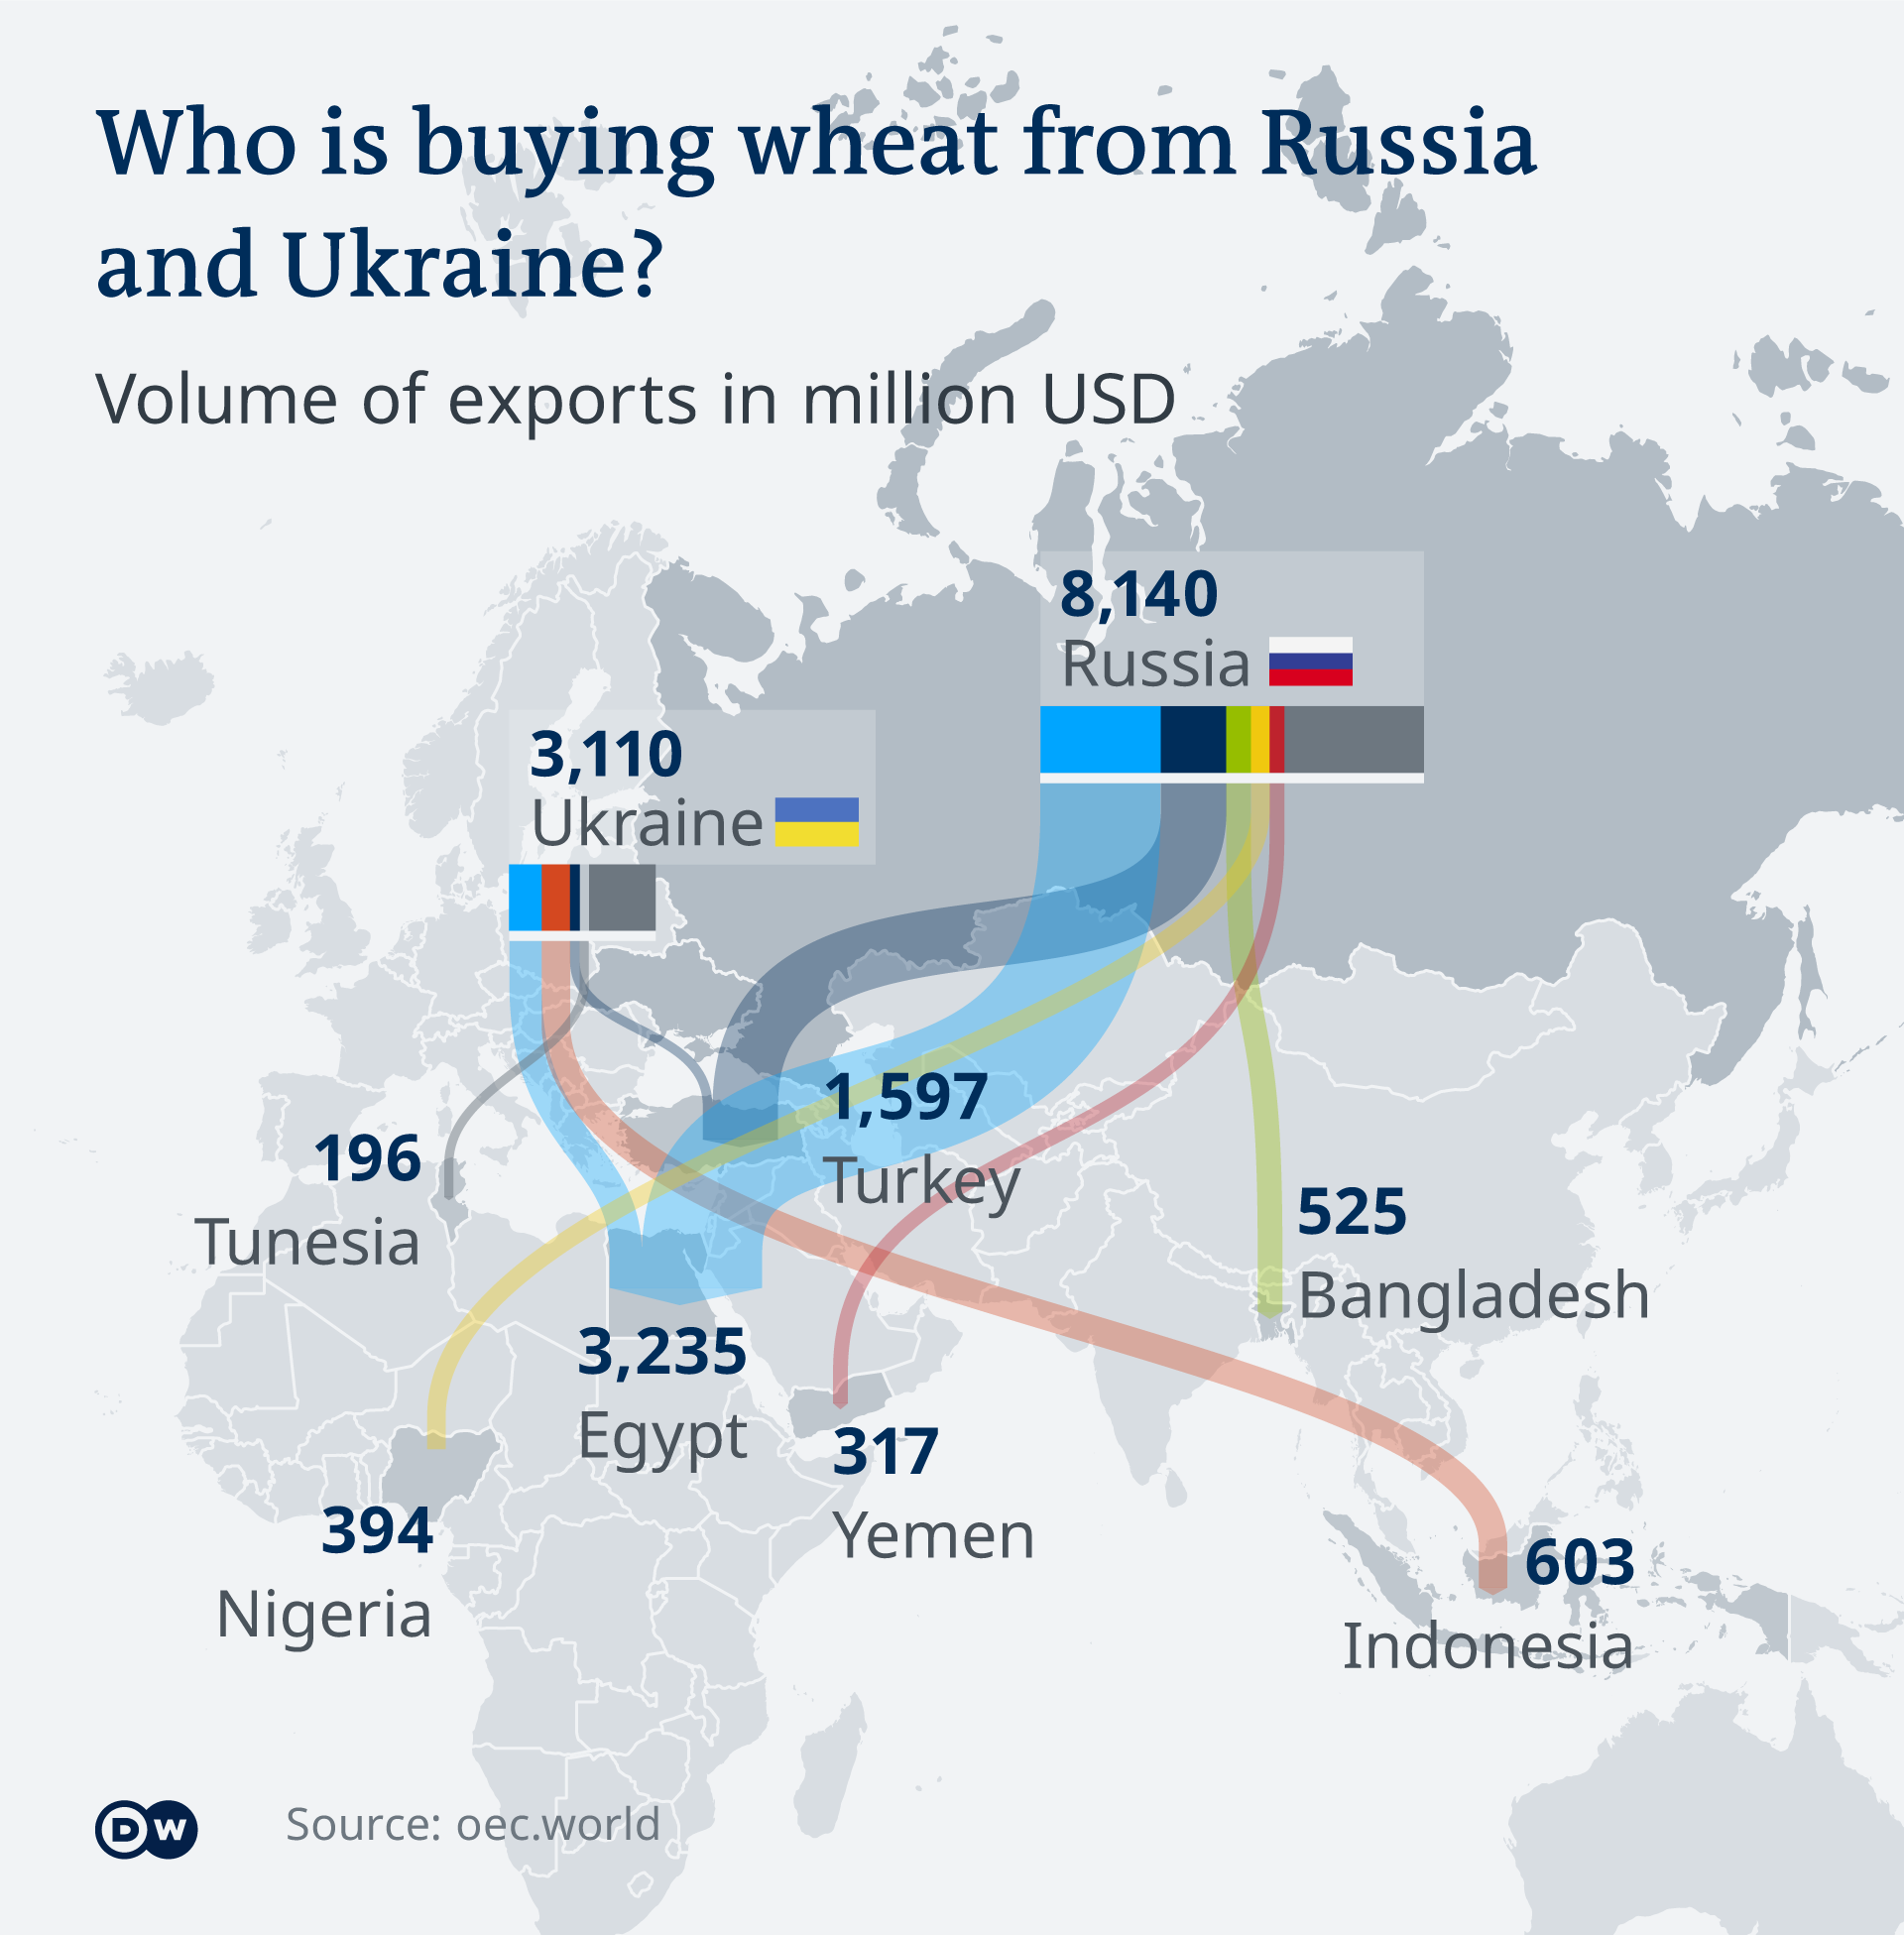 Ko kupuje žitarice od Rusije i Ukarjine